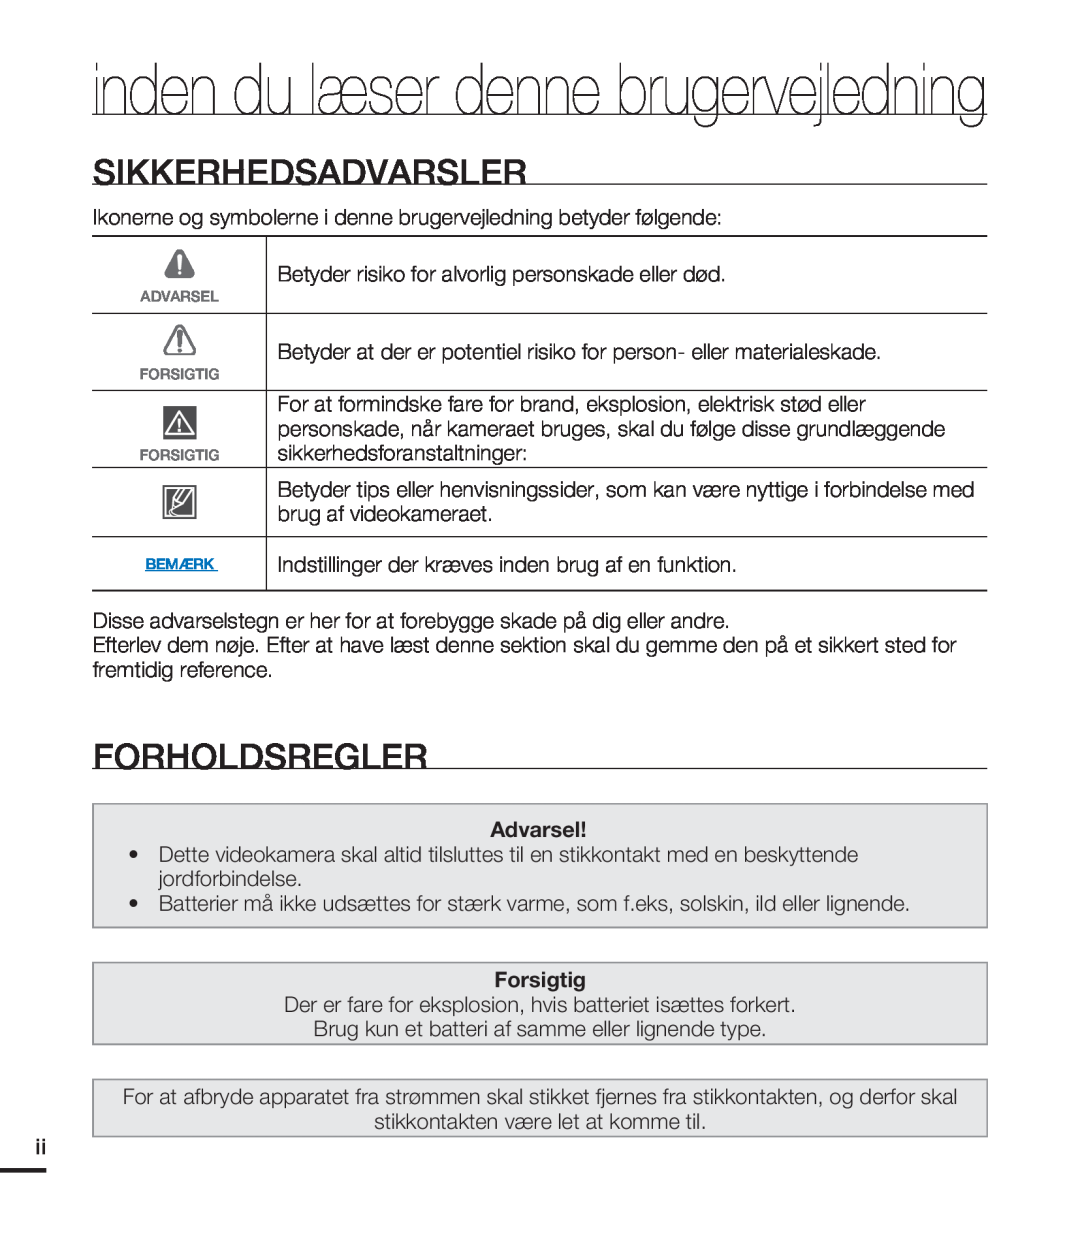 Samsung HMX-T10WP/EDC inden du læser denne brugervejledning, Sikkerhedsadvarsler, Forholdsregler, Advarsel, Forsigtig 